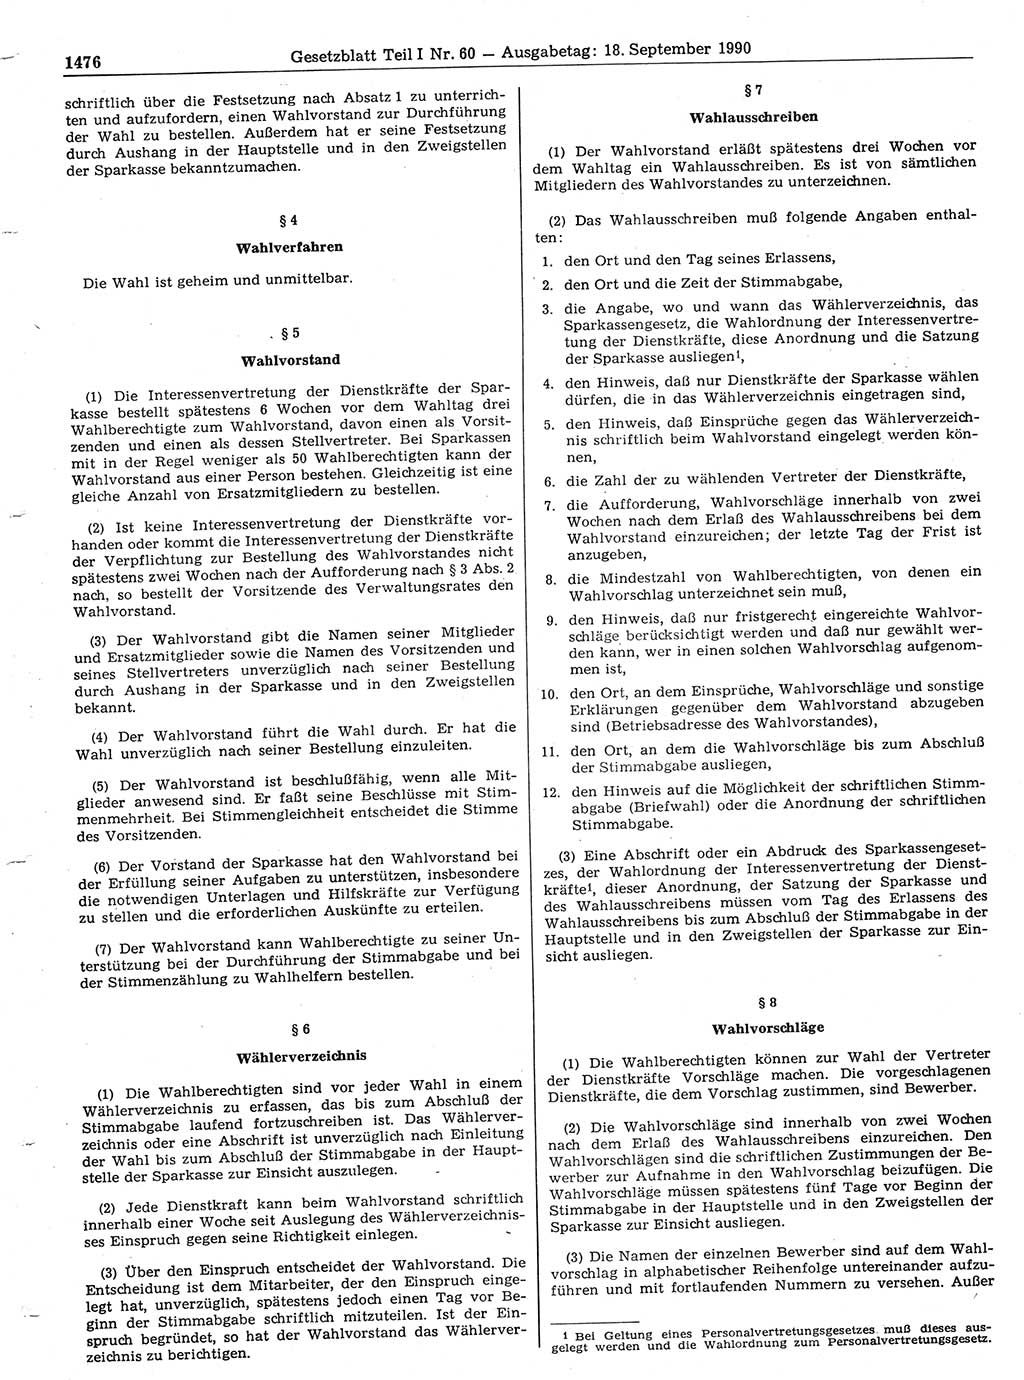 Gesetzblatt (GBl.) der Deutschen Demokratischen Republik (DDR) Teil Ⅰ 1990, Seite 1476 (GBl. DDR Ⅰ 1990, S. 1476)